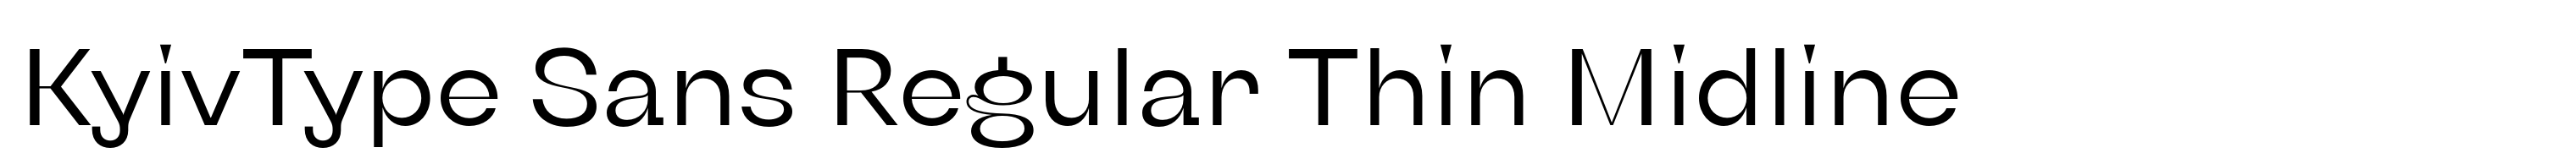 KyivType Sans Regular Thin Midline